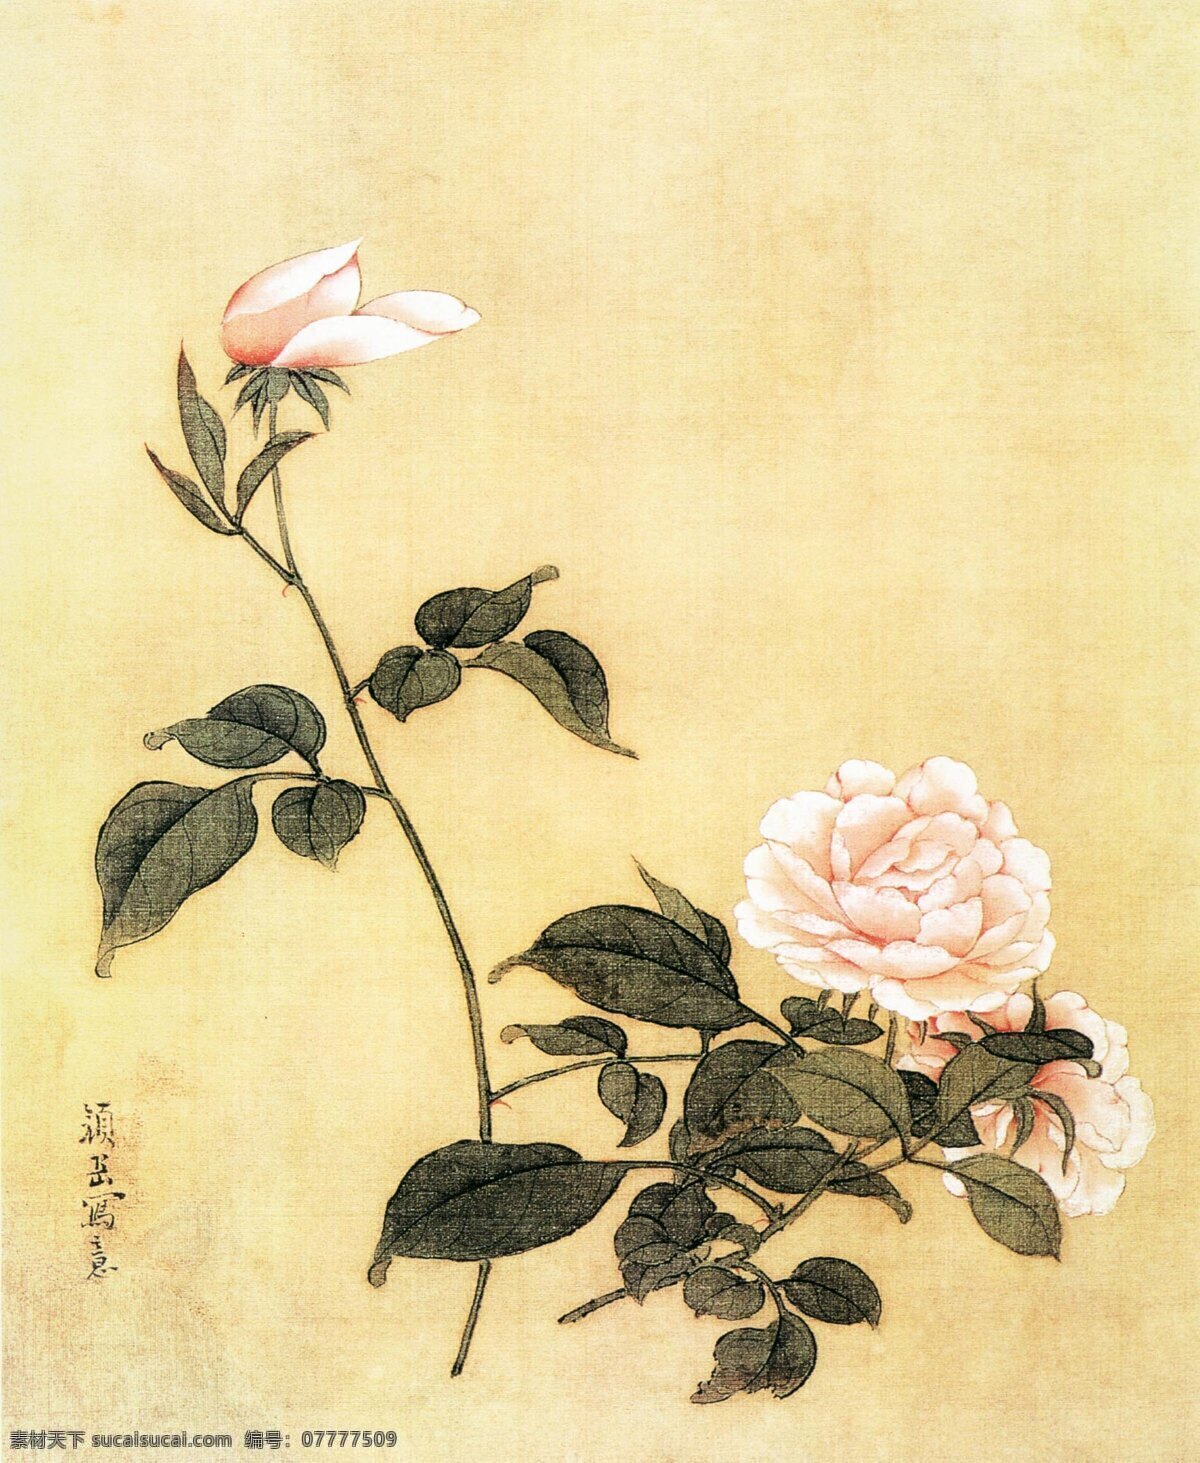 国画 粉色 牡丹 植物 中国画 水墨画 书画文字 文化艺术